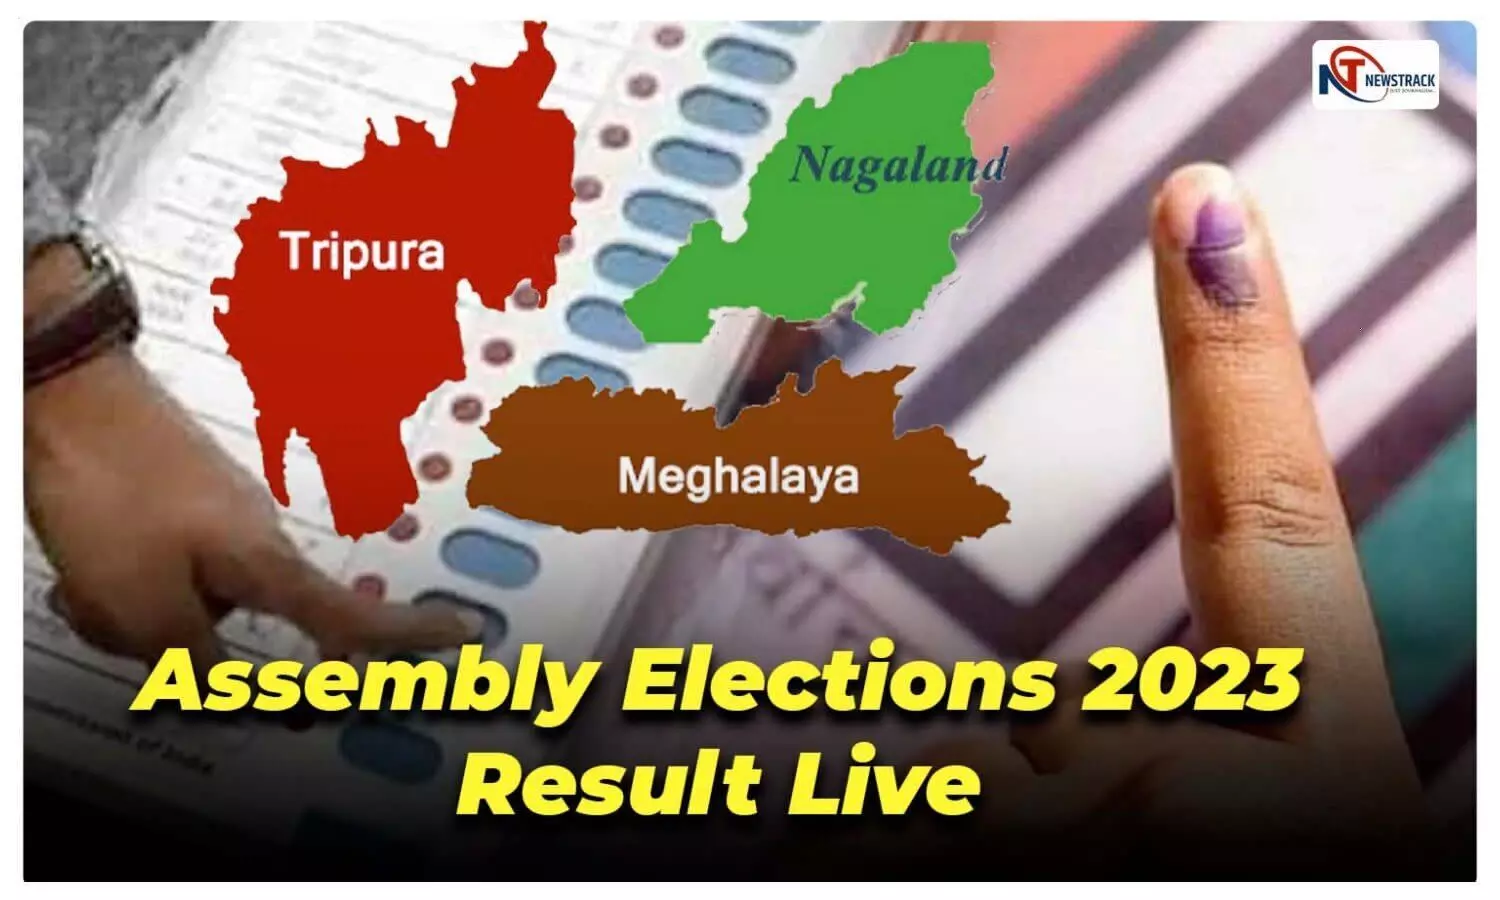 Tripura Meghalaya Nagaland Vote Counting Live Update